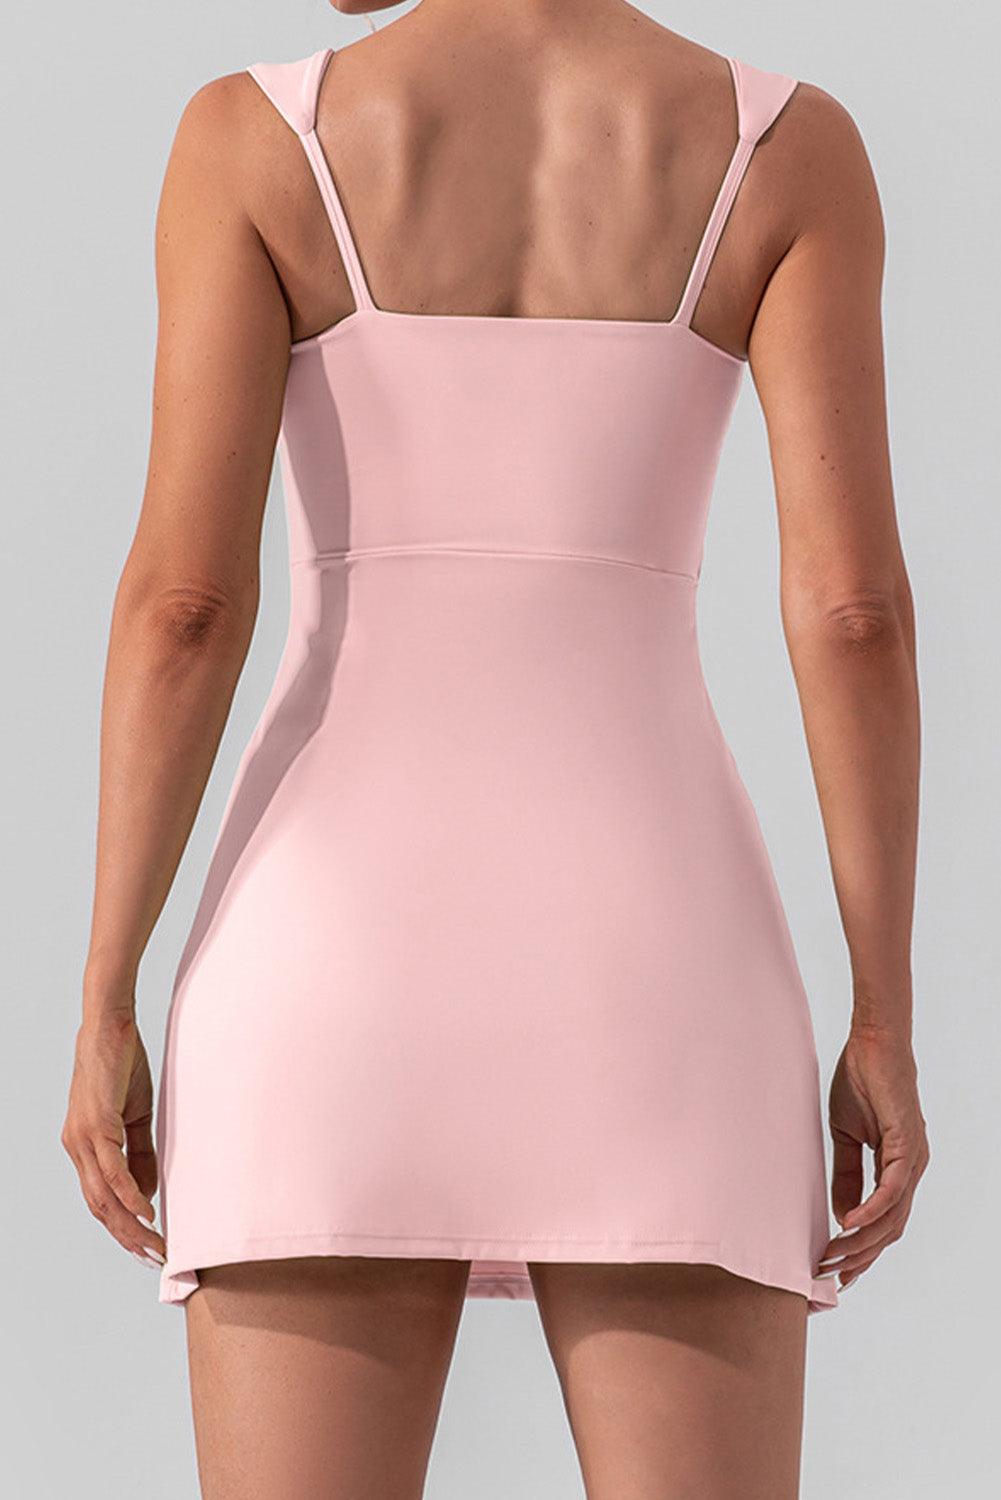 Light Pink U Neck Sleeveless Side Slit Sports Mini Dress - L & M Kee, LLC